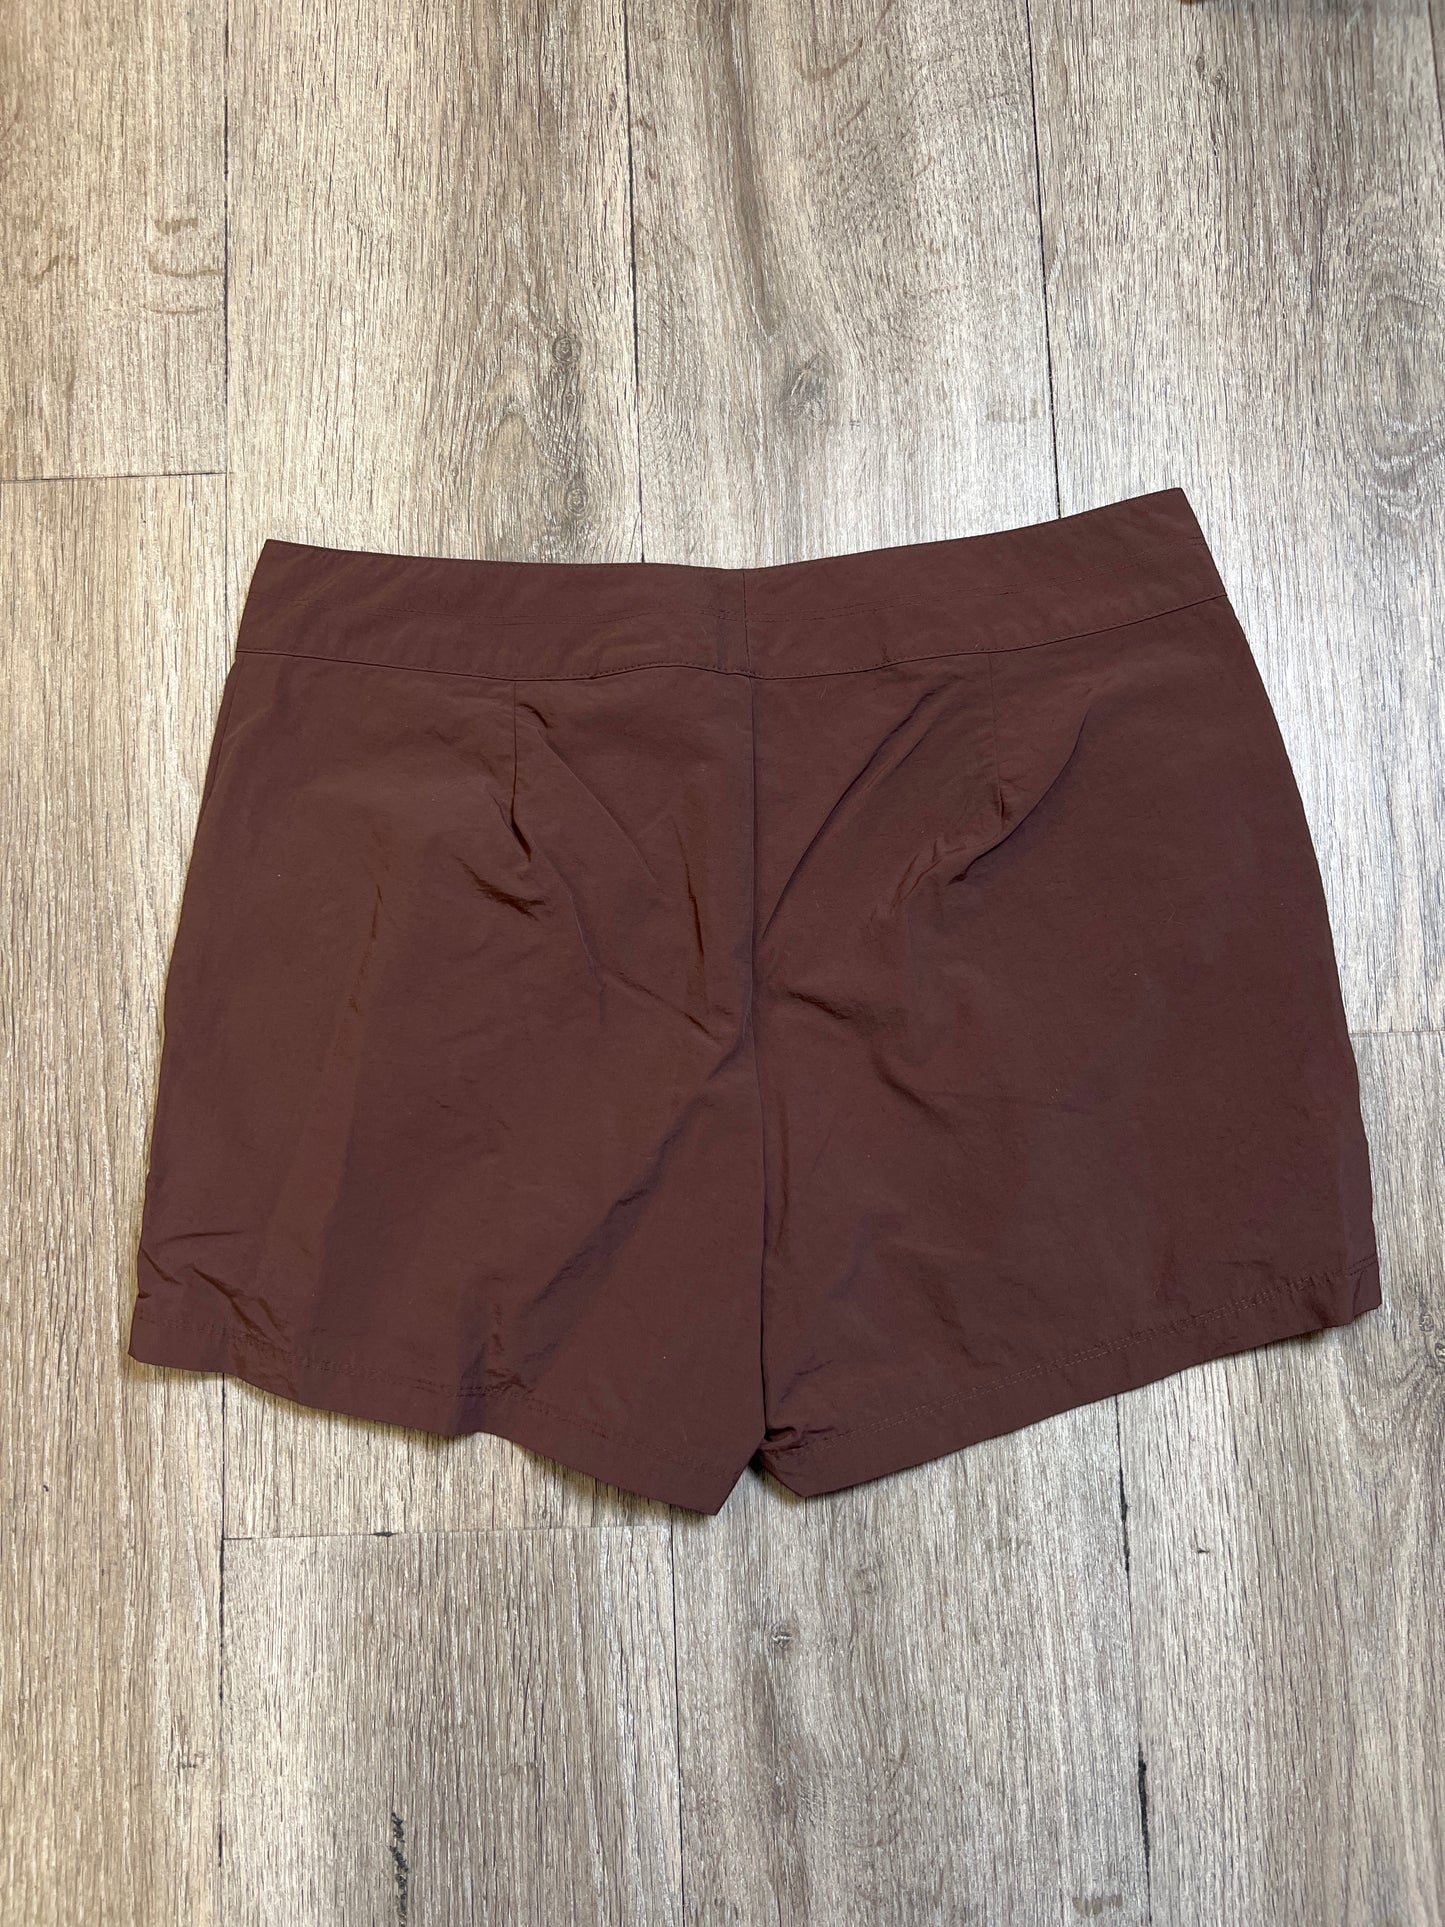 Shorts By Eddie Bauer  Size: S